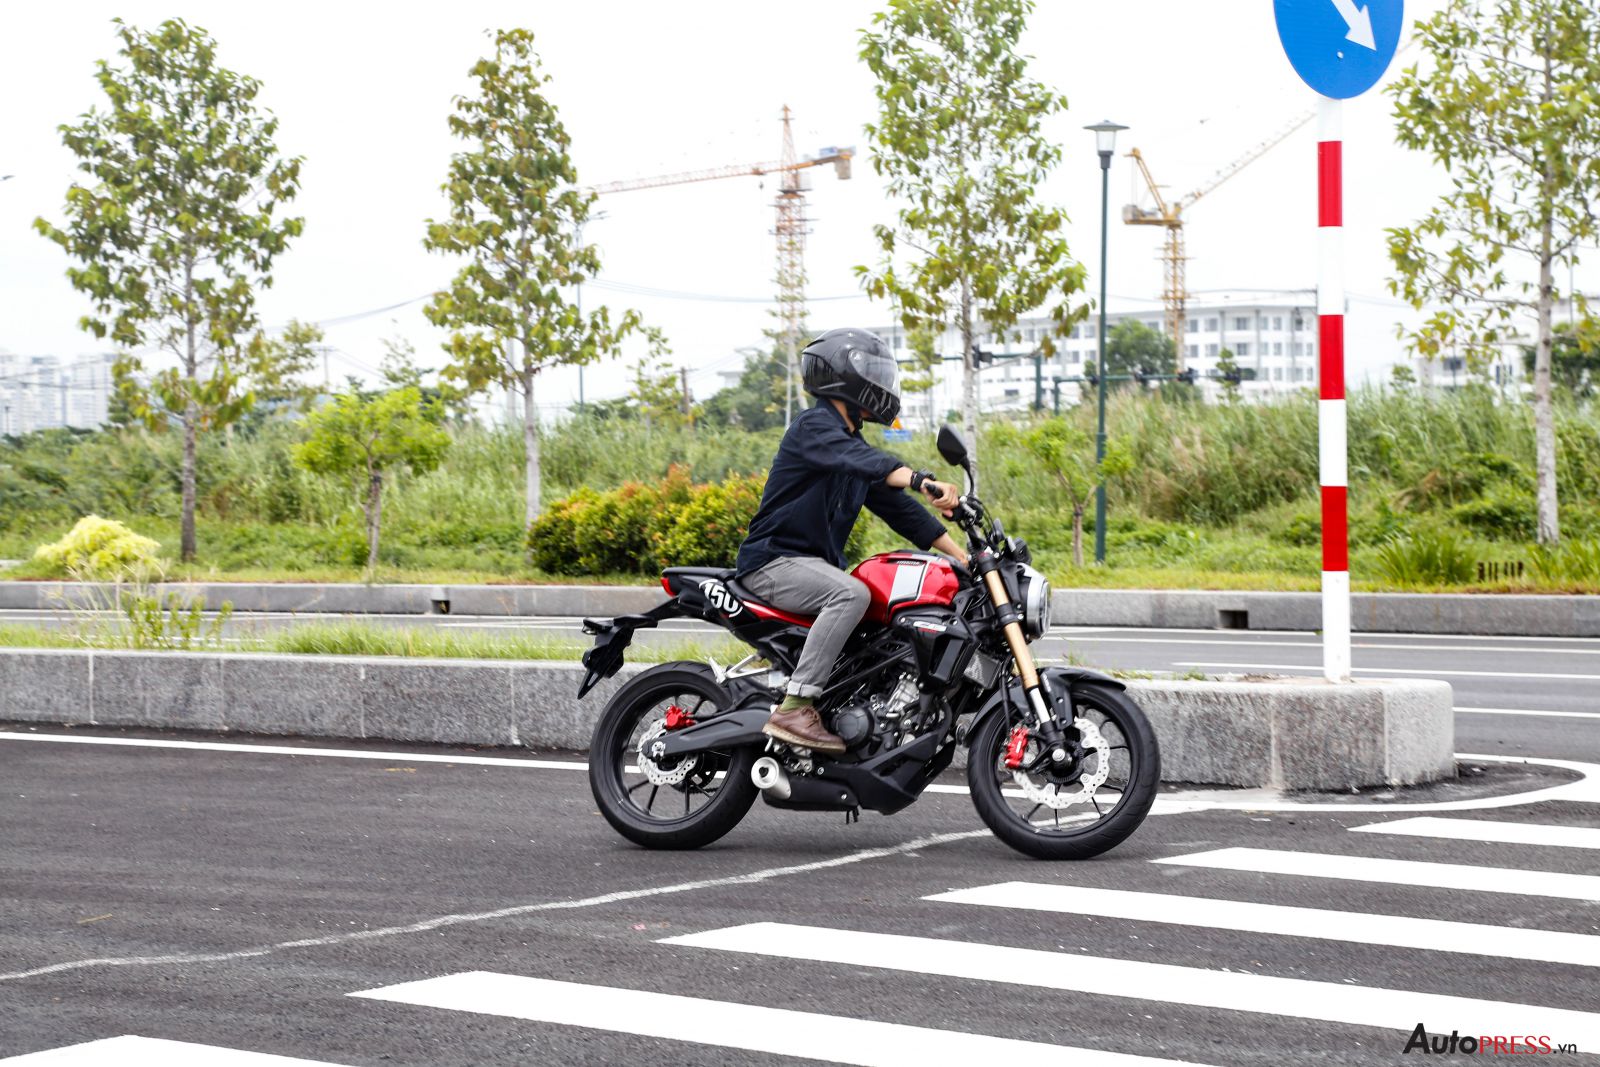 Honda CB150R 2019 naked bike đậm chất chơi